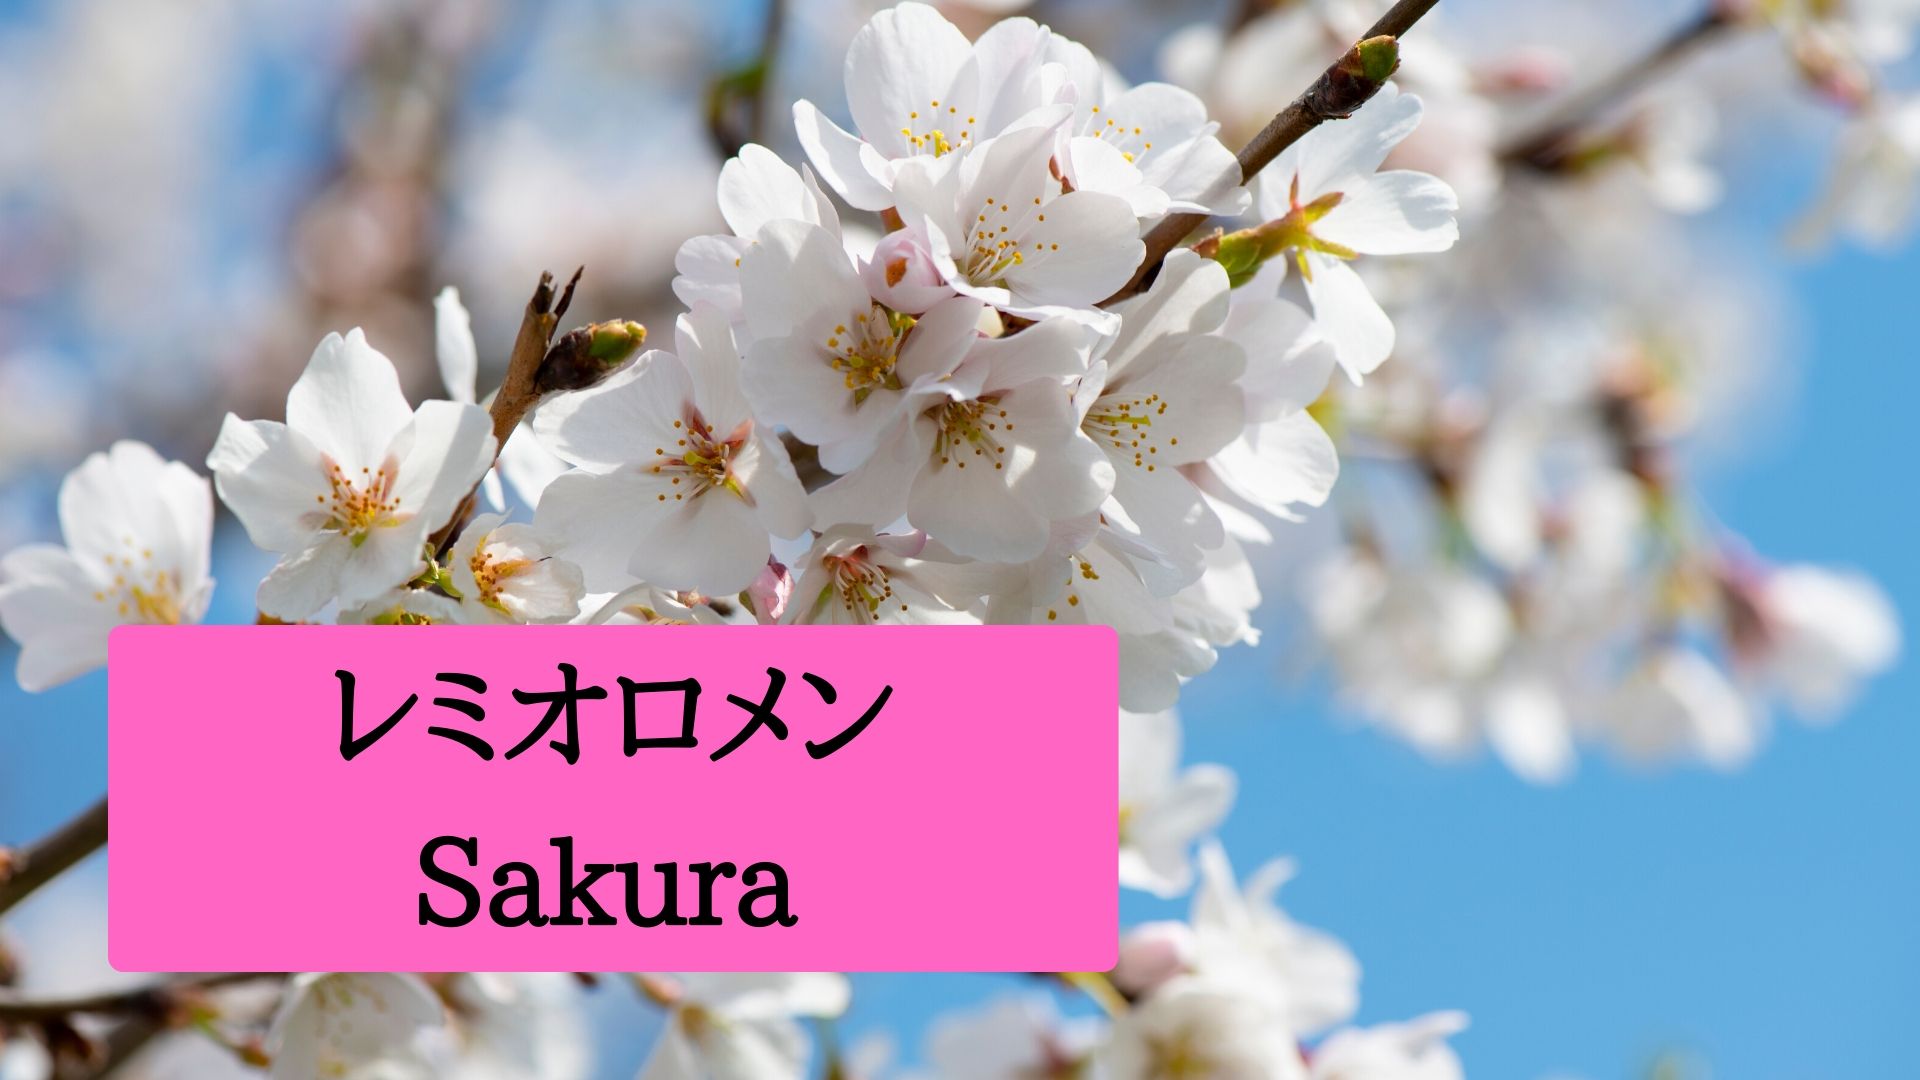 レミオロメン『Sakura』